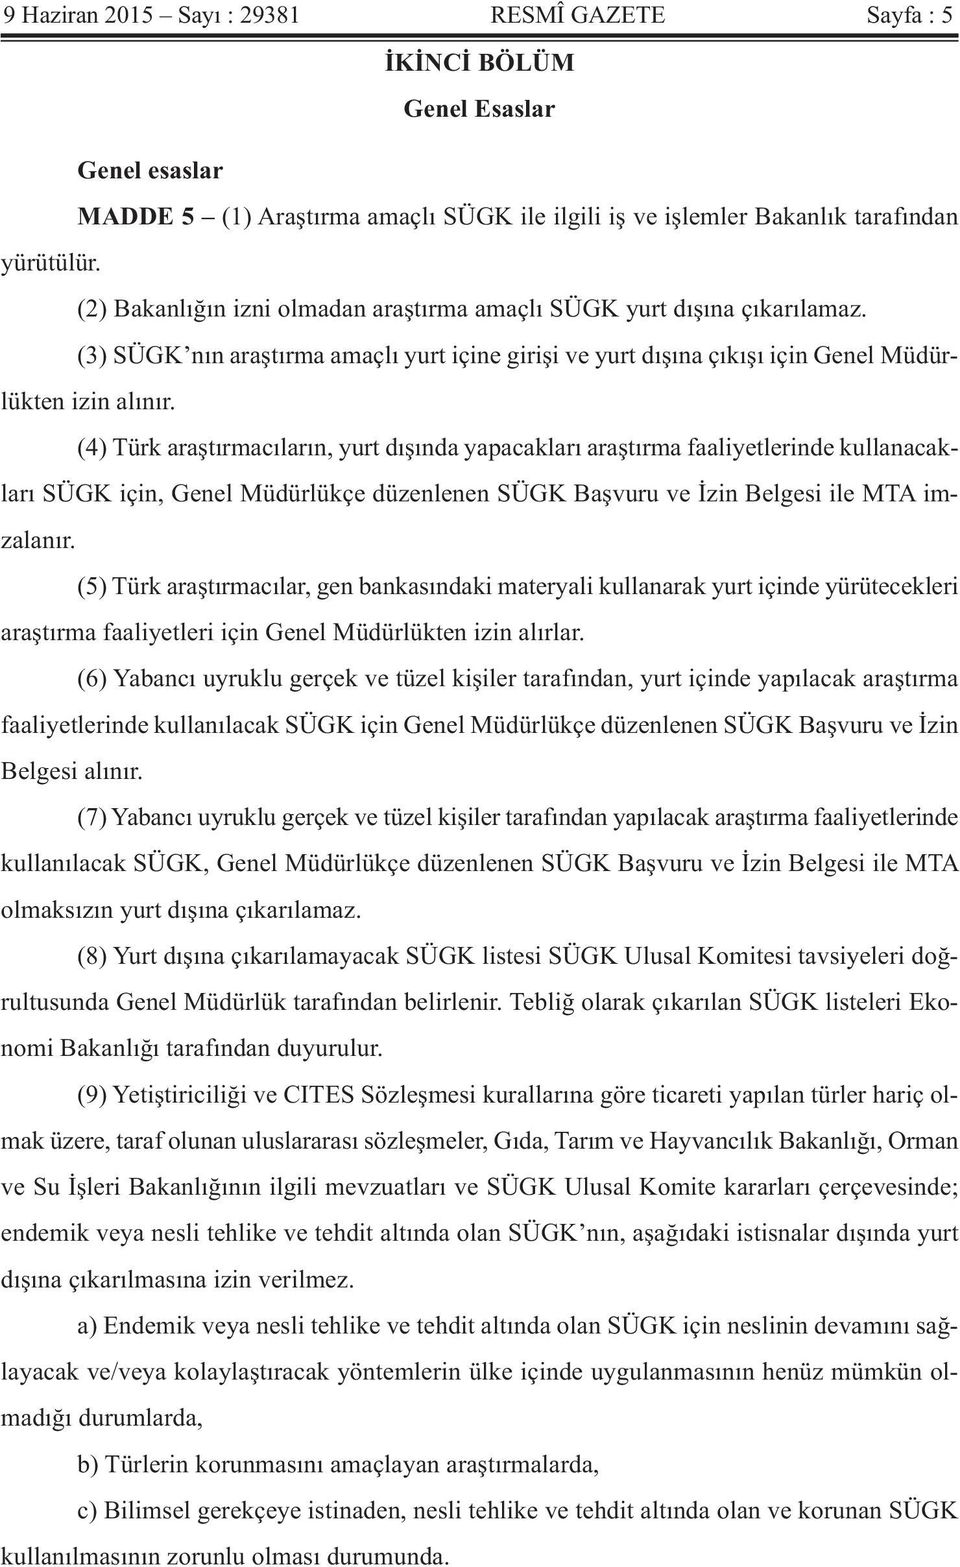 (4) Türk araştırmacıların, yurt dışında yapacakları araştırma faaliyetlerinde kullanacakları SÜGK için, Genel Müdürlükçe düzenlenen SÜGK Başvuru ve İzin Belgesi ile MTA imzalanır.